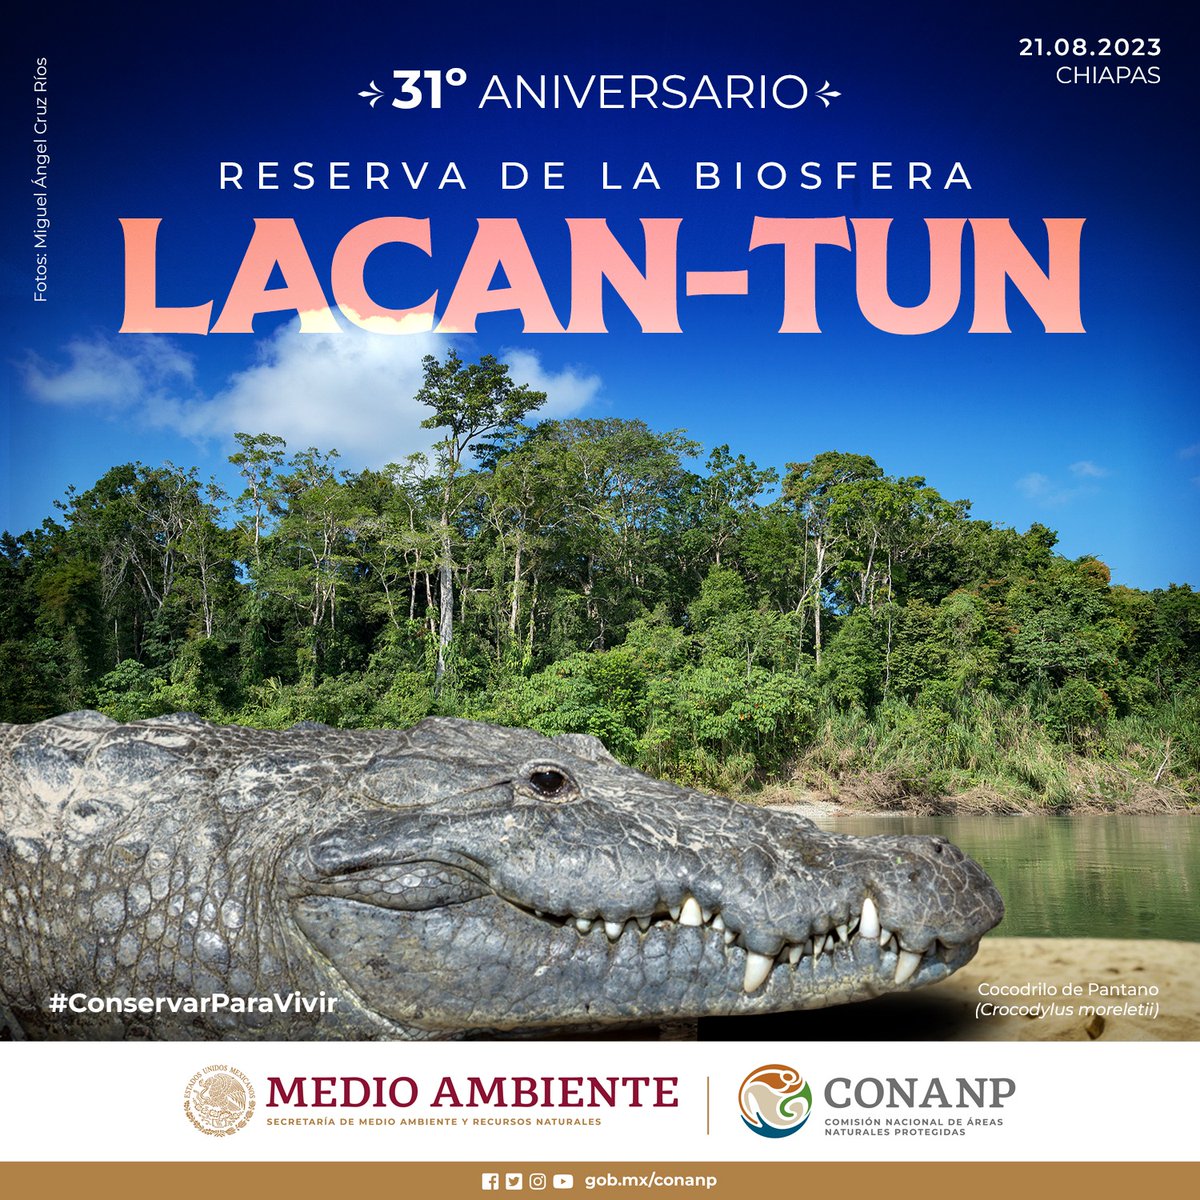 La Reserva de la Biosfera #LacanTun, en Chiapas, forma parte del macizo forestal conocido como #SelvaLacandona. Hoy celebramos su aniversario de haber sido decretada como #ÁreaNaturalProtegida. 🥳🎉 #ConservarParaVivir 🌲🌸🌳🐆🦜🐒🐊🍄🦎🕷️🪶🌿🌼